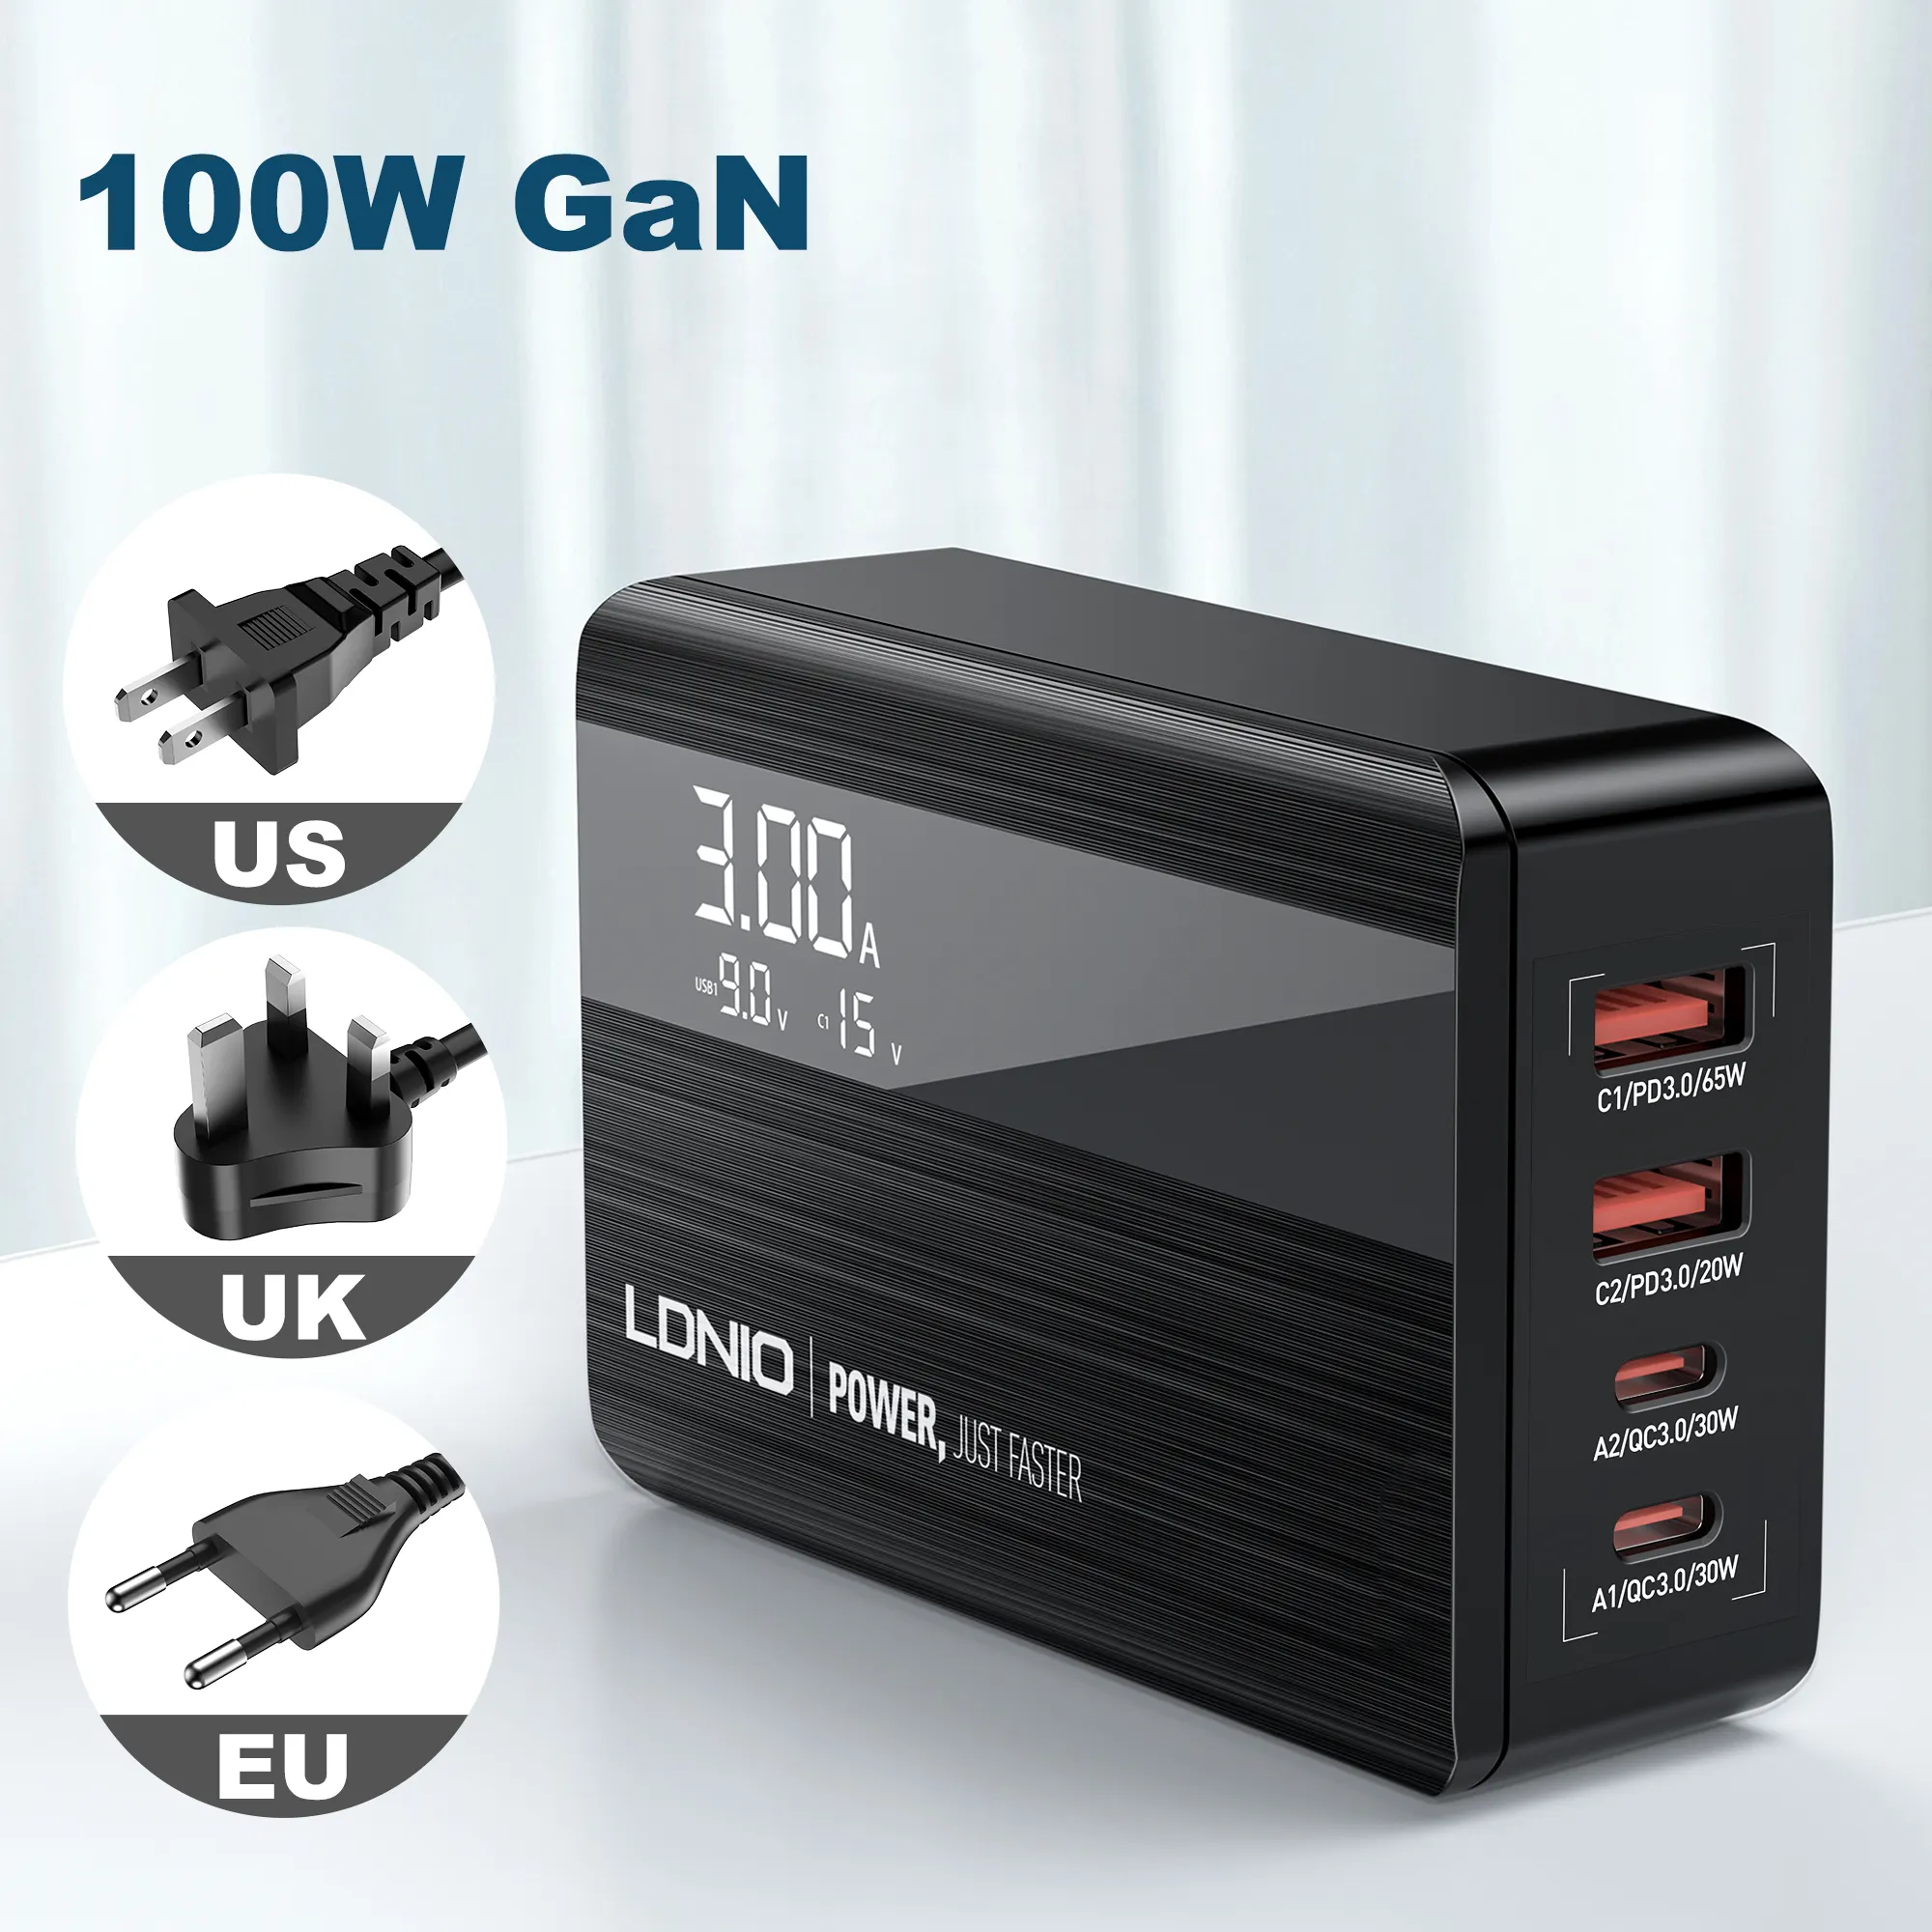 LDNIO A4809C самый продаваемый продукт на Alibaba QC3.0 PD 4 USB Gan Phone зарядное устройство адаптер для ноутбука Macbook 100 Вт Зарядное устройство Gan